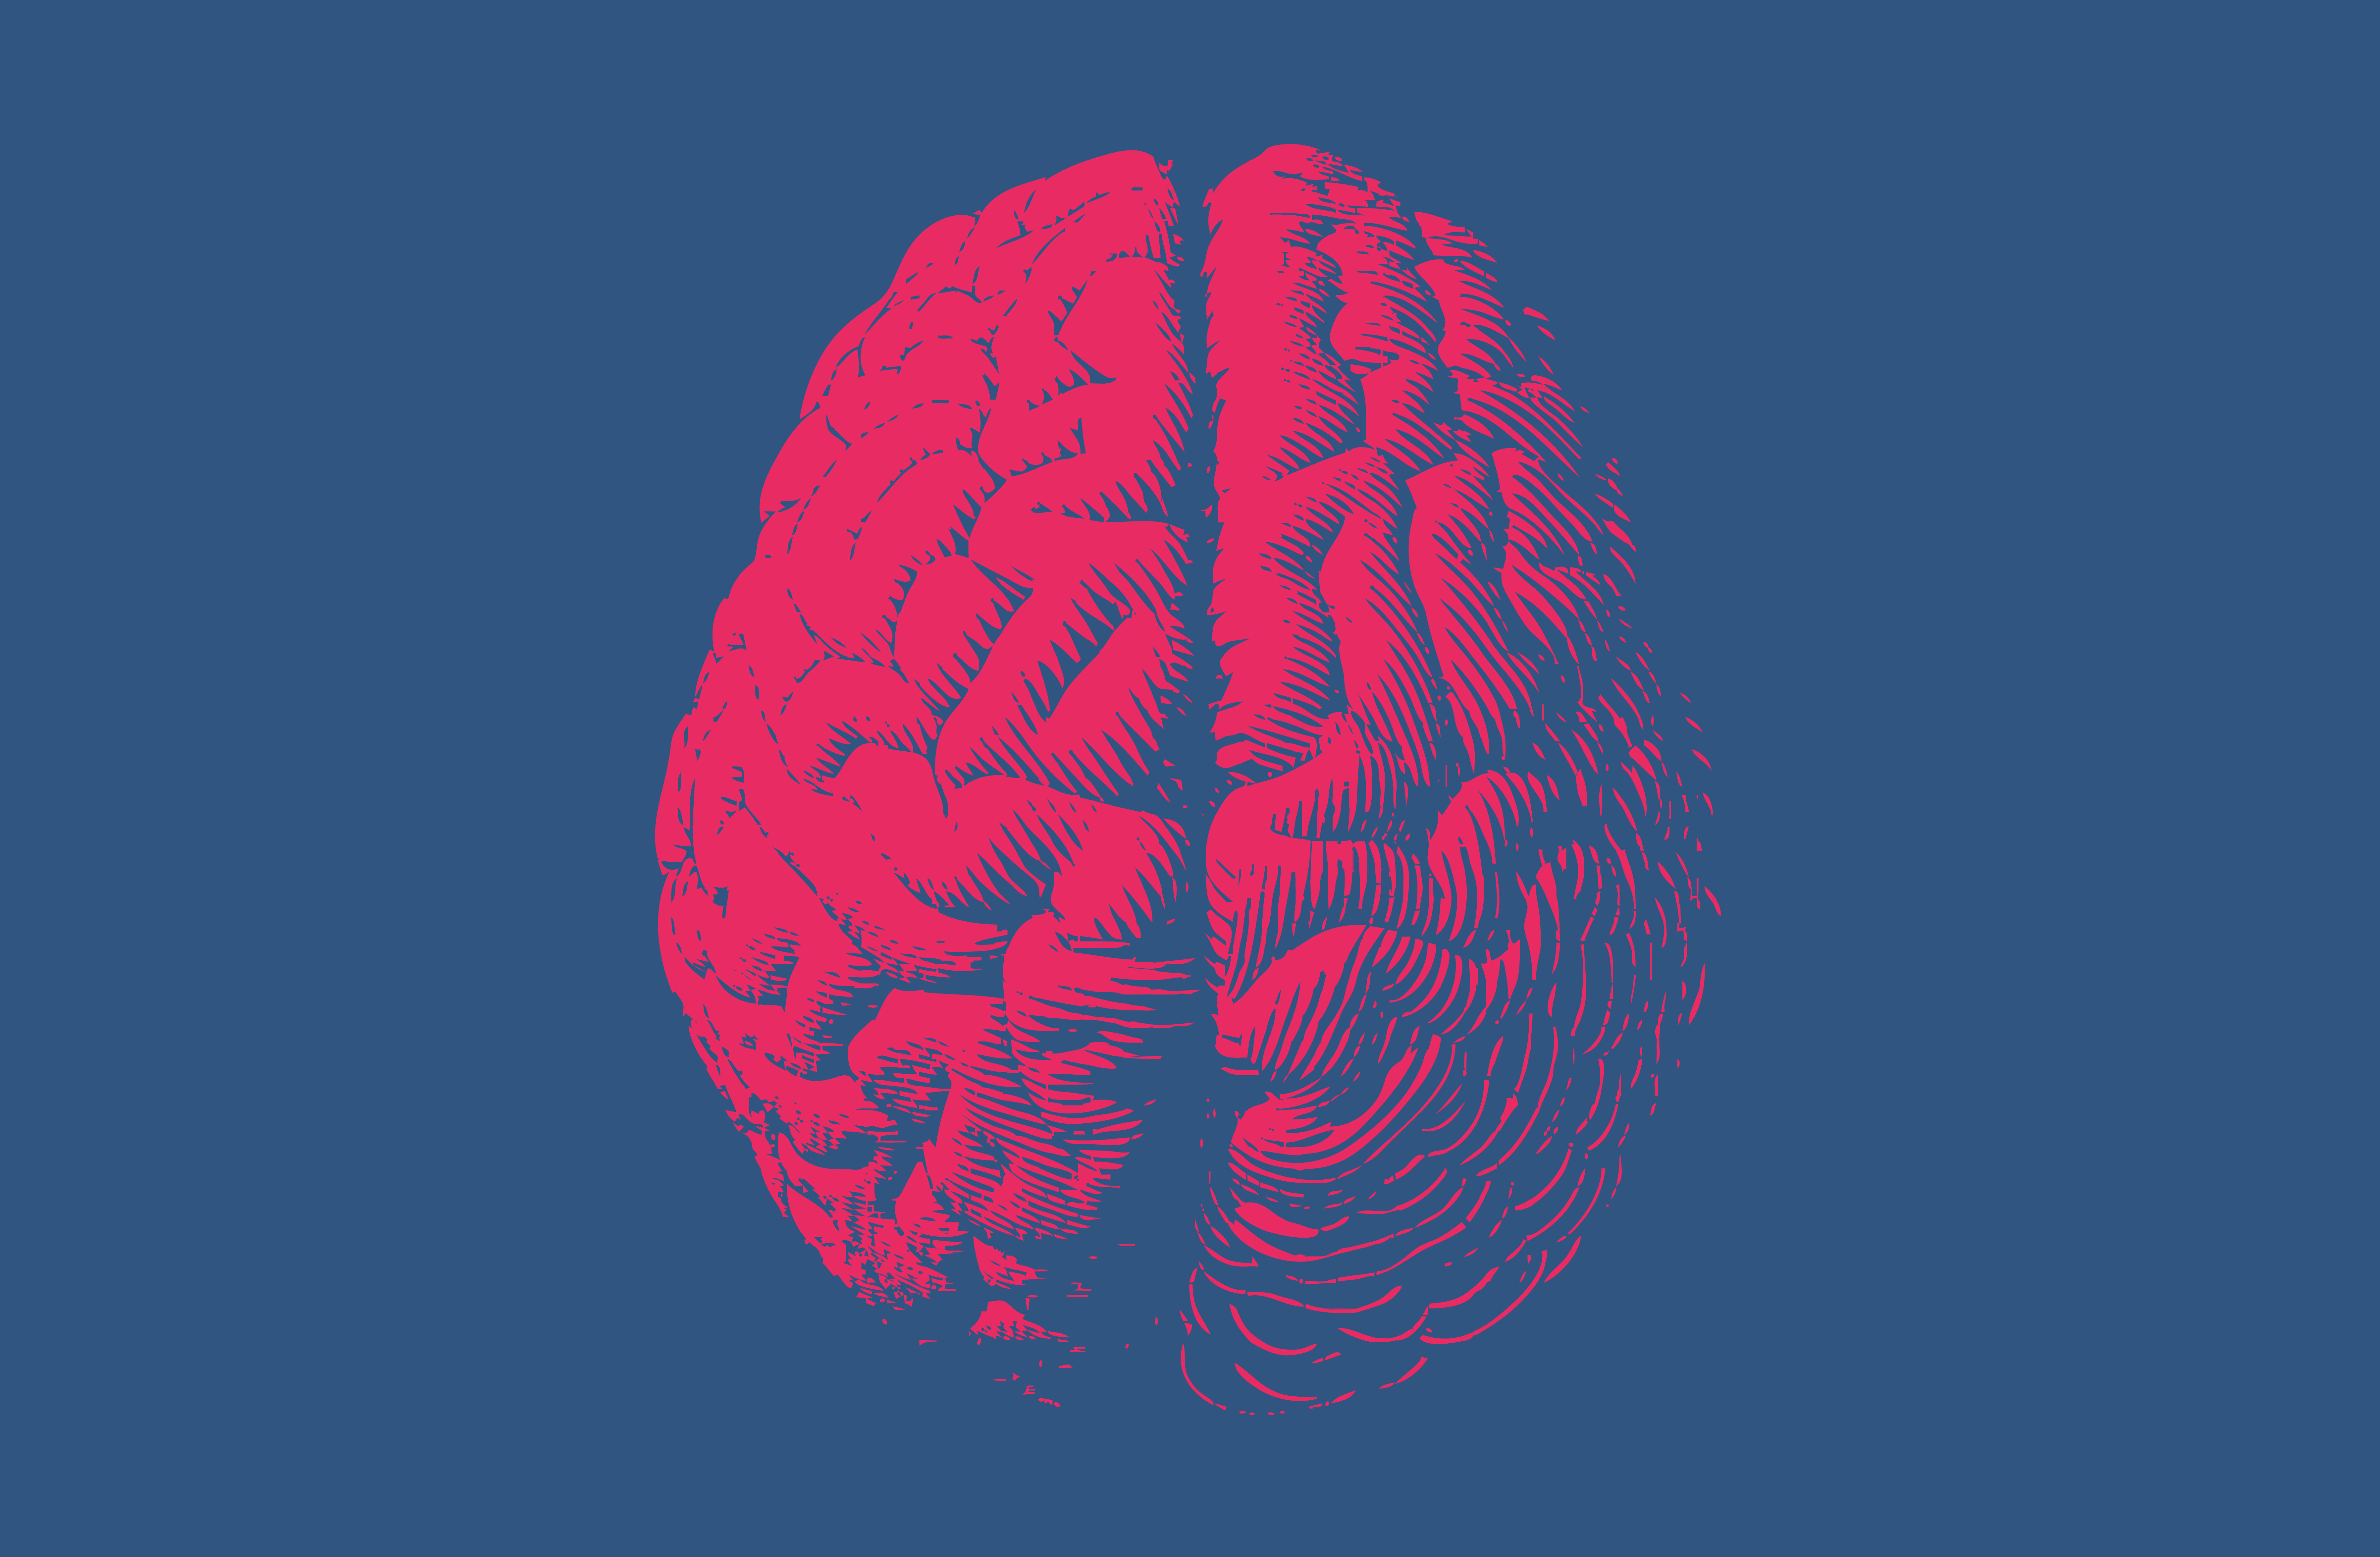 Jeff Hawkins: Thousand Brains Theory of Intelligence